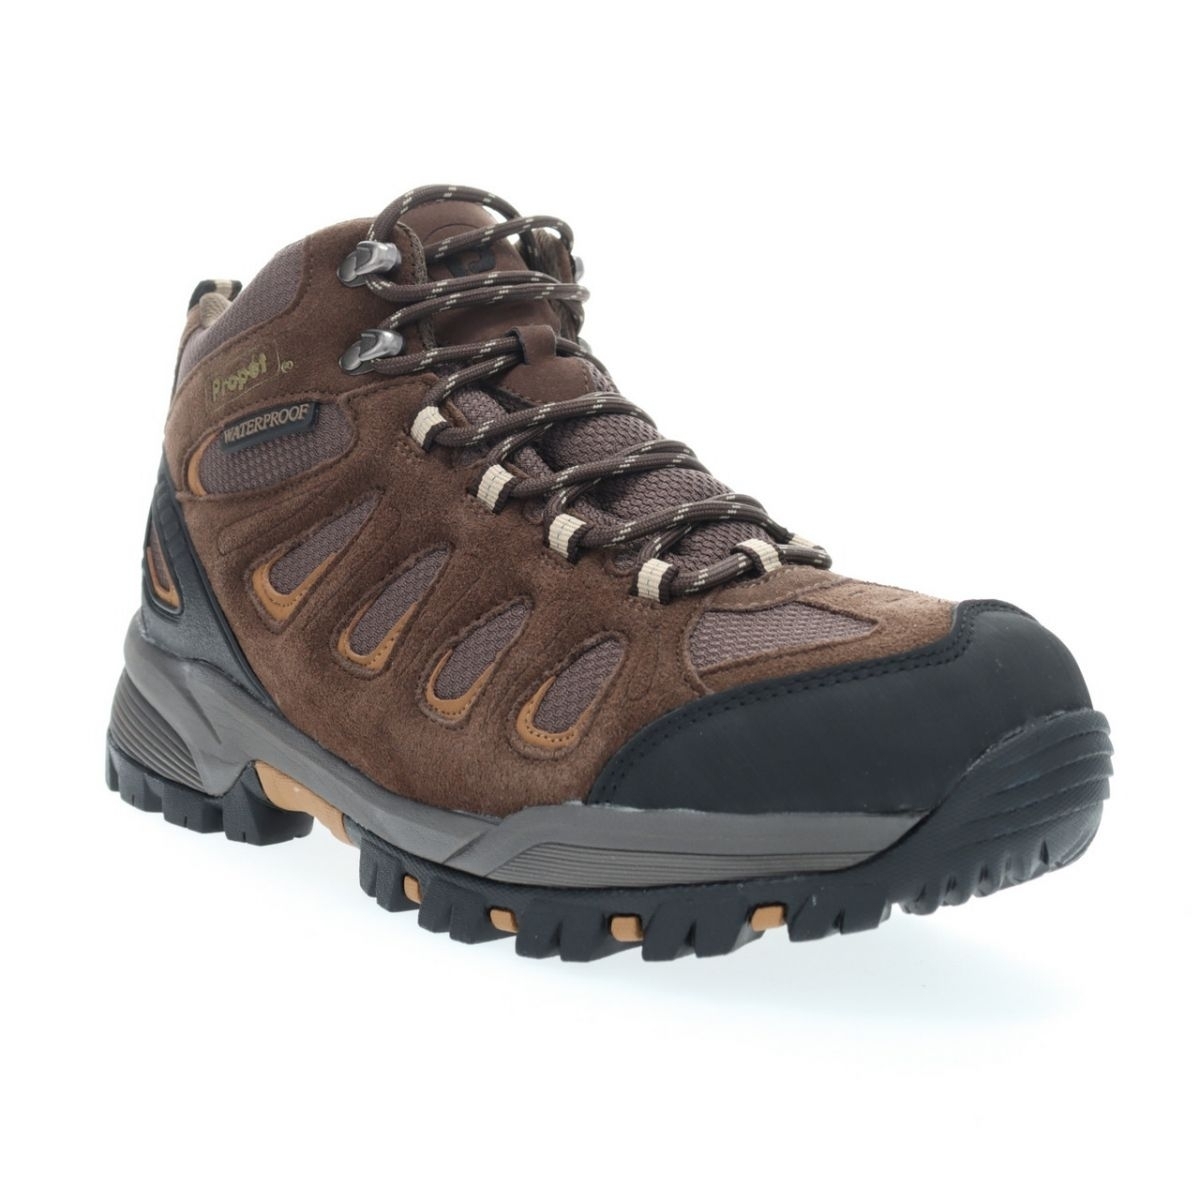 Propet Men's Ridge Walker Hiking Boot Brown - M3599BR 8 XX US Men BROWN - BROWN, 9 X-Wide